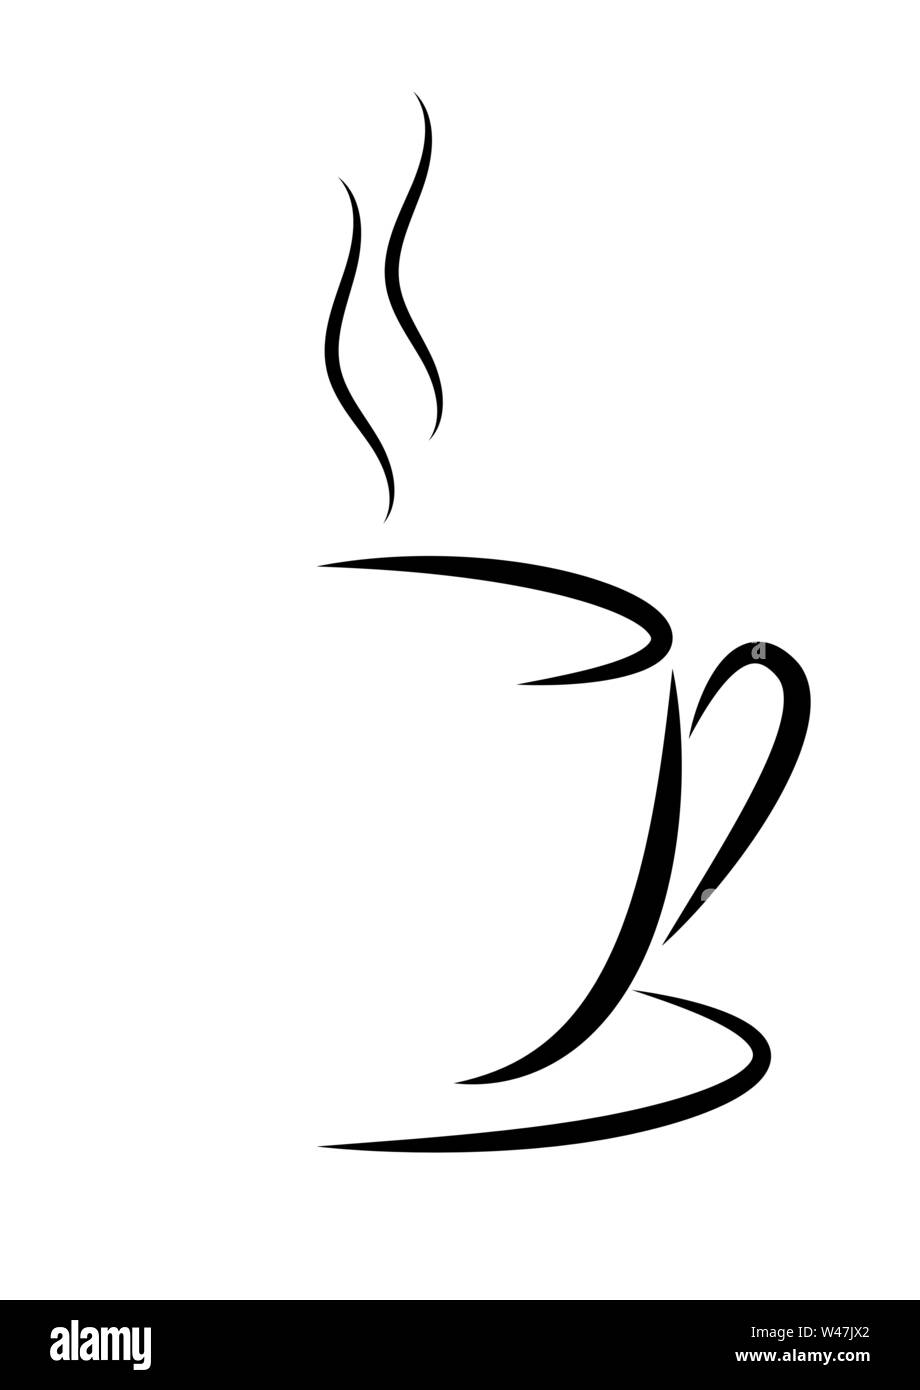 Abstract illustrazione vettoriale di una tazza di caffè o tè con vapore. Design piatto. Illustrazione Vettoriale